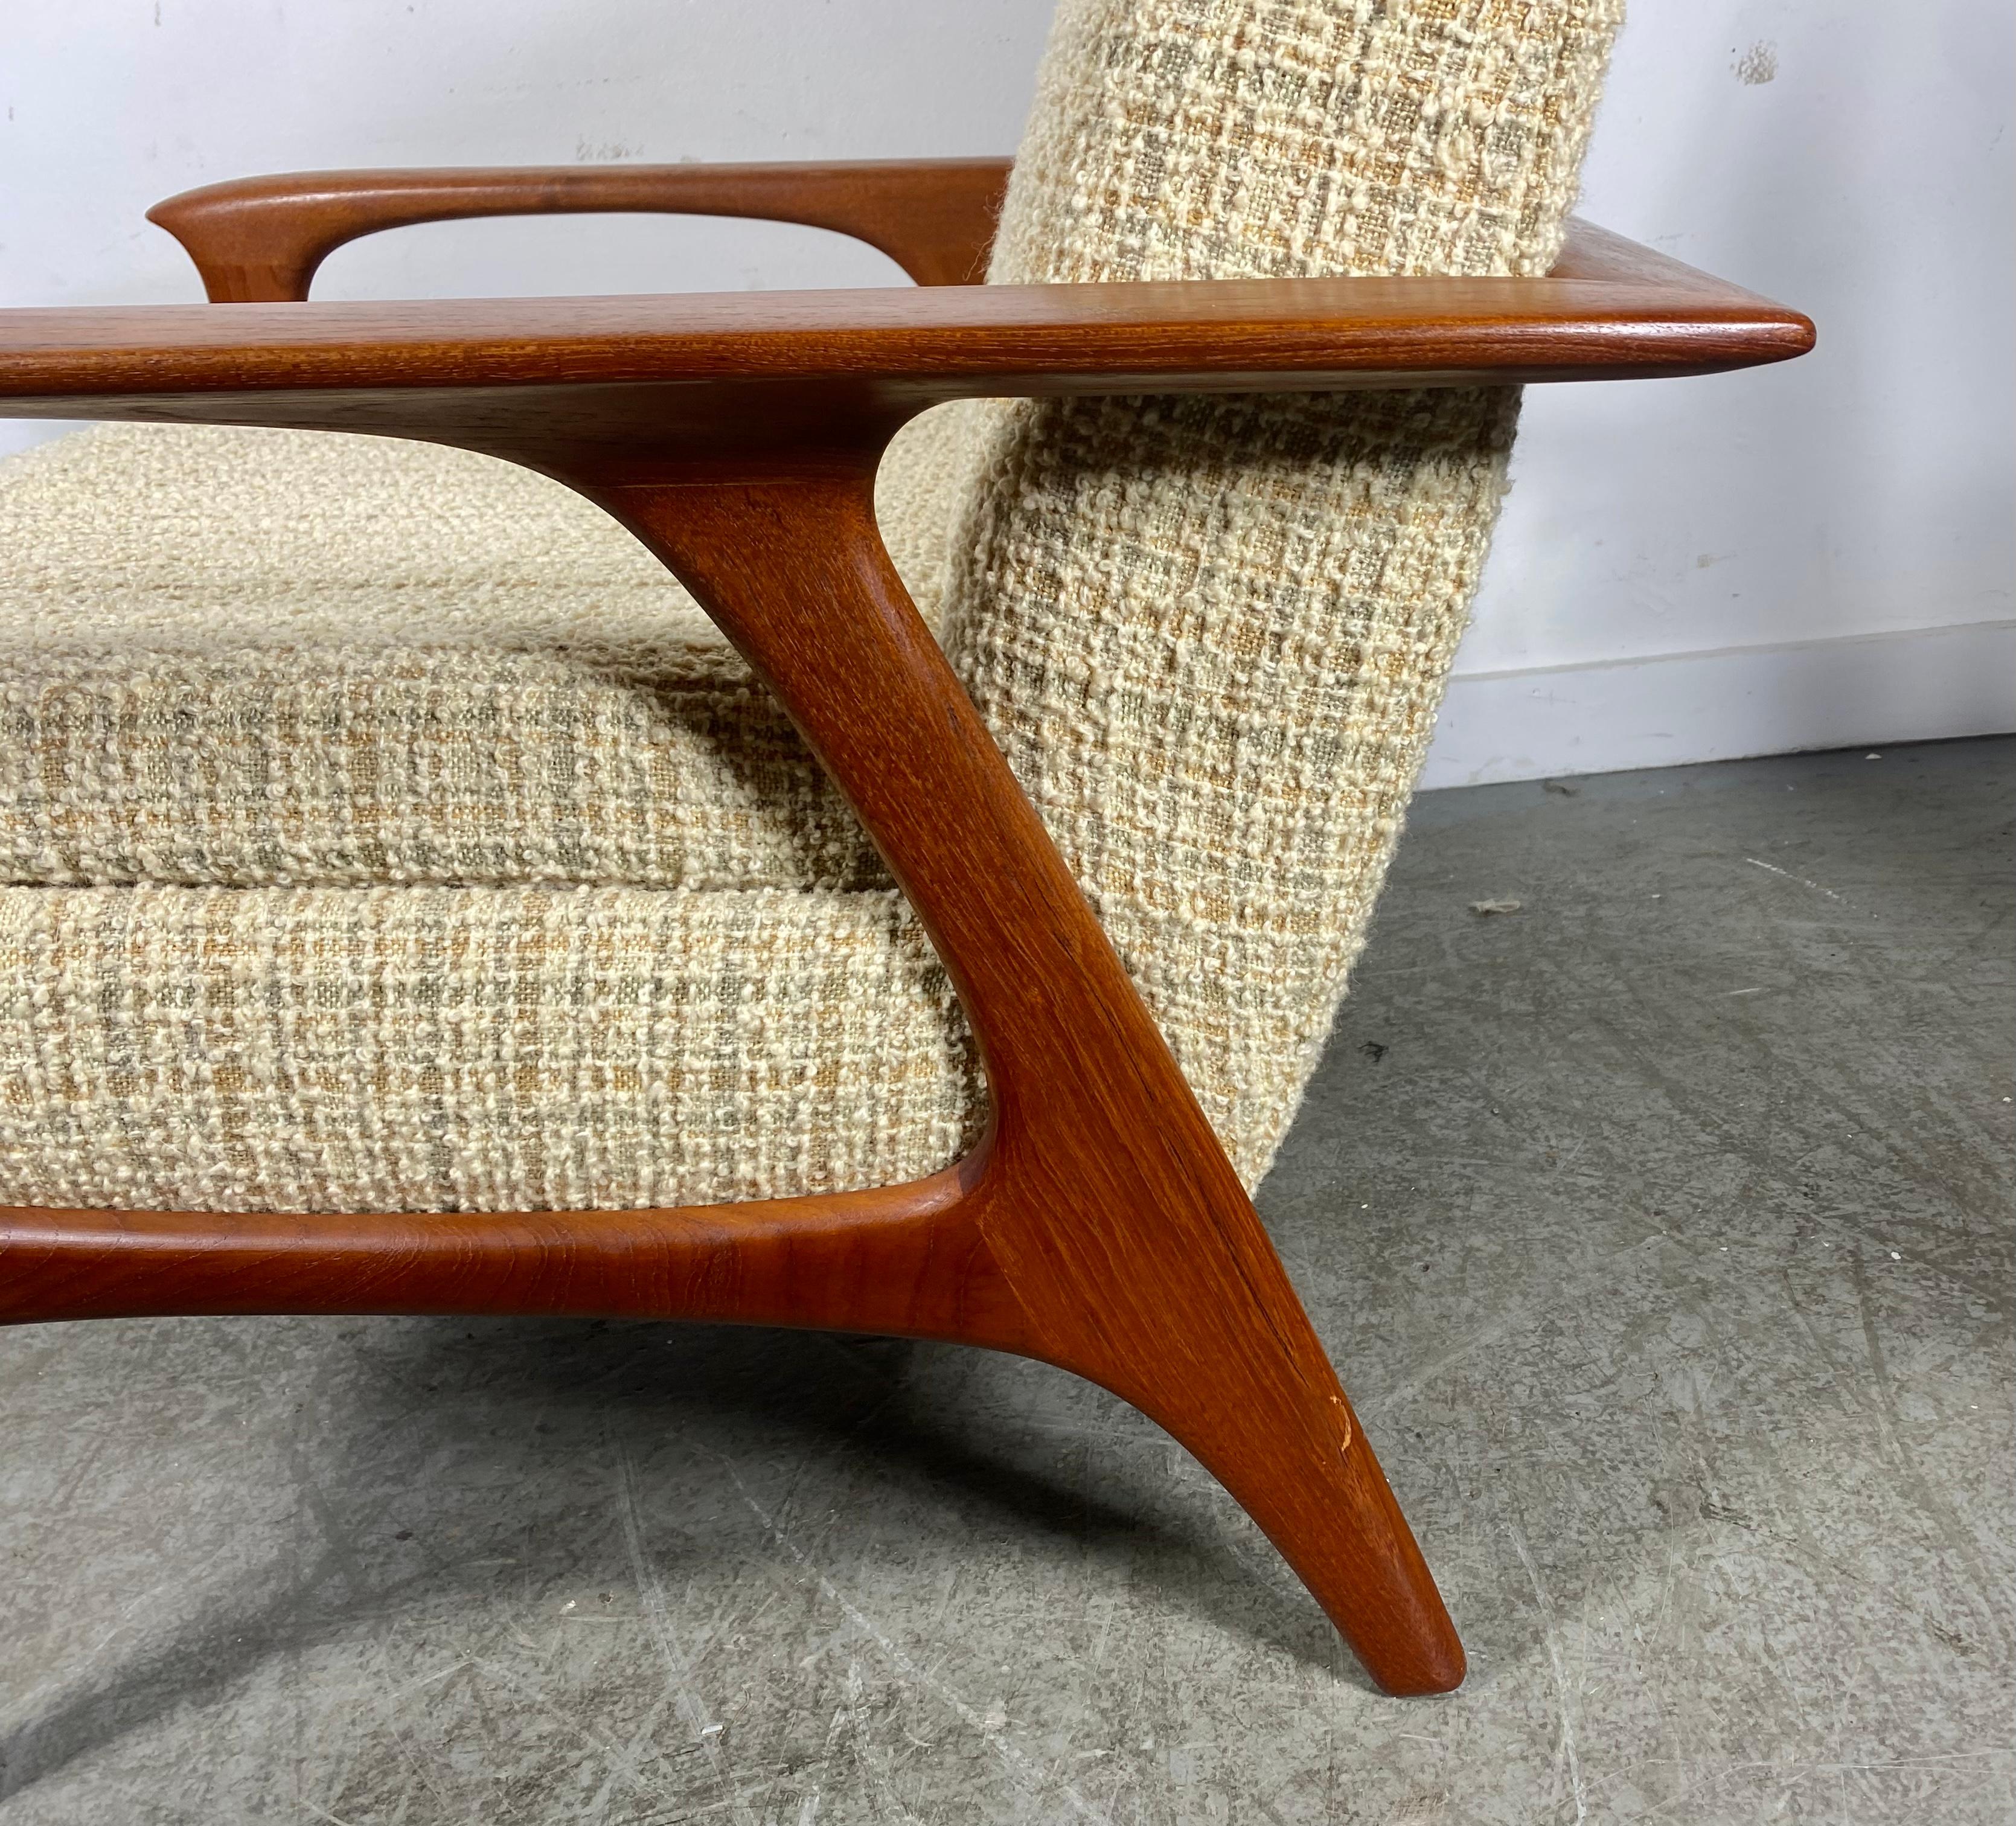 Classic Scandinavian Modern Teak Lounge Chair , Art von Hans Wegner. Hervorragende Qualität und Konstruktion, klassisches, schlankes Design. Beibehaltung der originalen cremefarbenen Wollstoffpolsterung in hervorragendem Originalzustand.